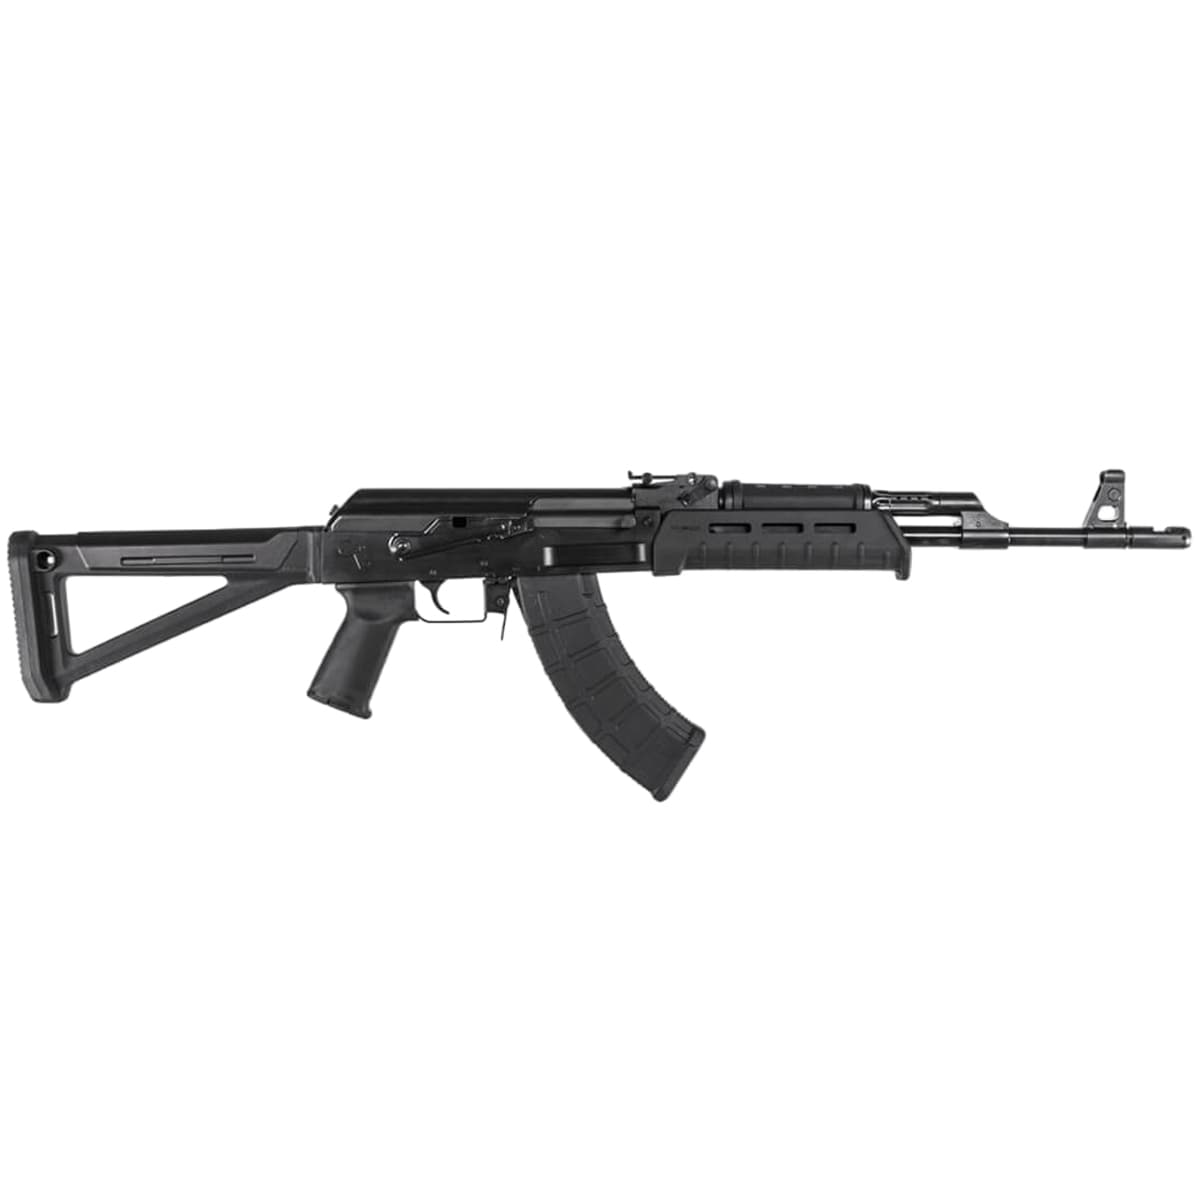 Magazynek 30 nabojowy Magpul PMAG 30 AK/AKM MOE kal. 7.62 x 39 mm do karabinków AK-47/AKM - Black